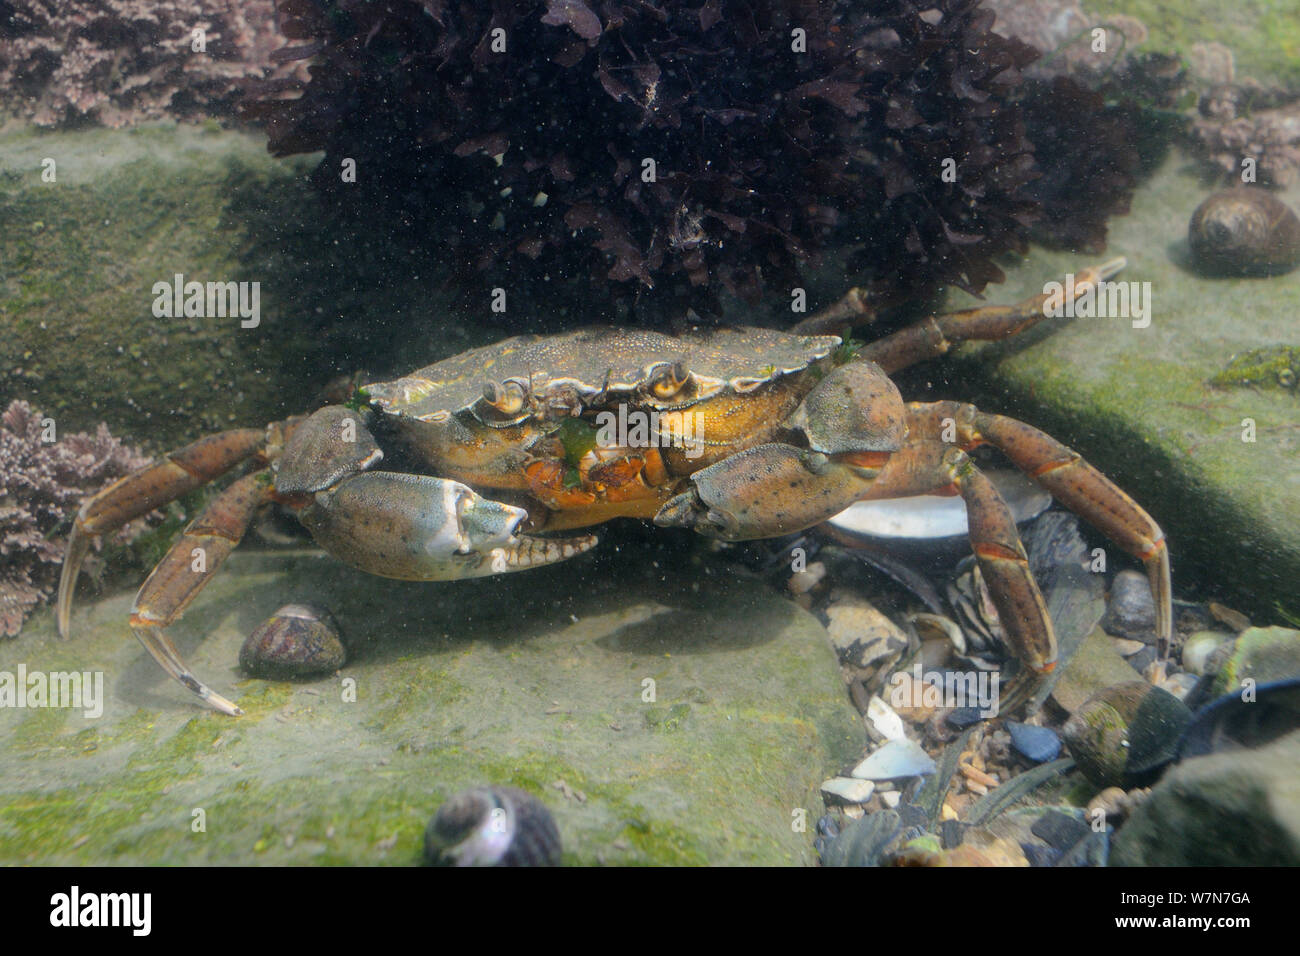 Carcinus maenas Shore (cangrejo) con garras dañadas se alimentan en un fragmento de la lechuga de mar (Ulva lactuca) en un rockpool. Rhossili, la Península de Gower, REINO UNIDO, Julio. Foto de stock